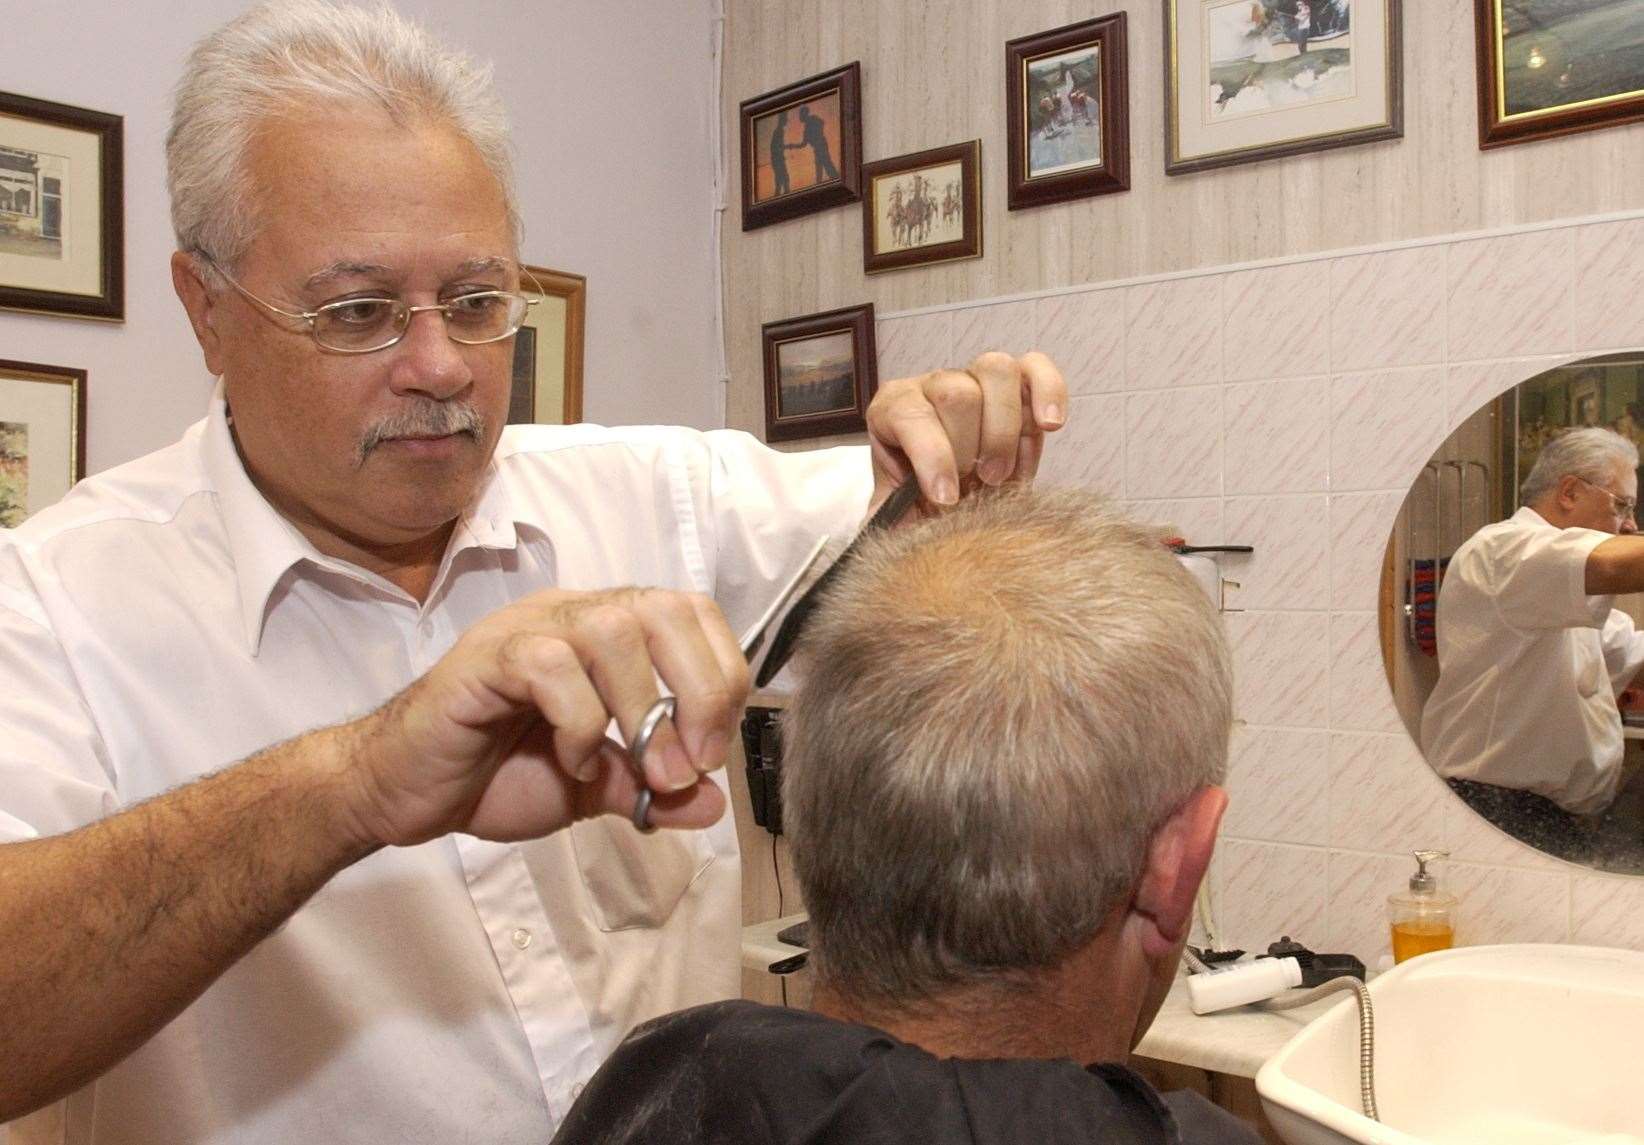 Gordon Johnson cut hair for more than 40 years